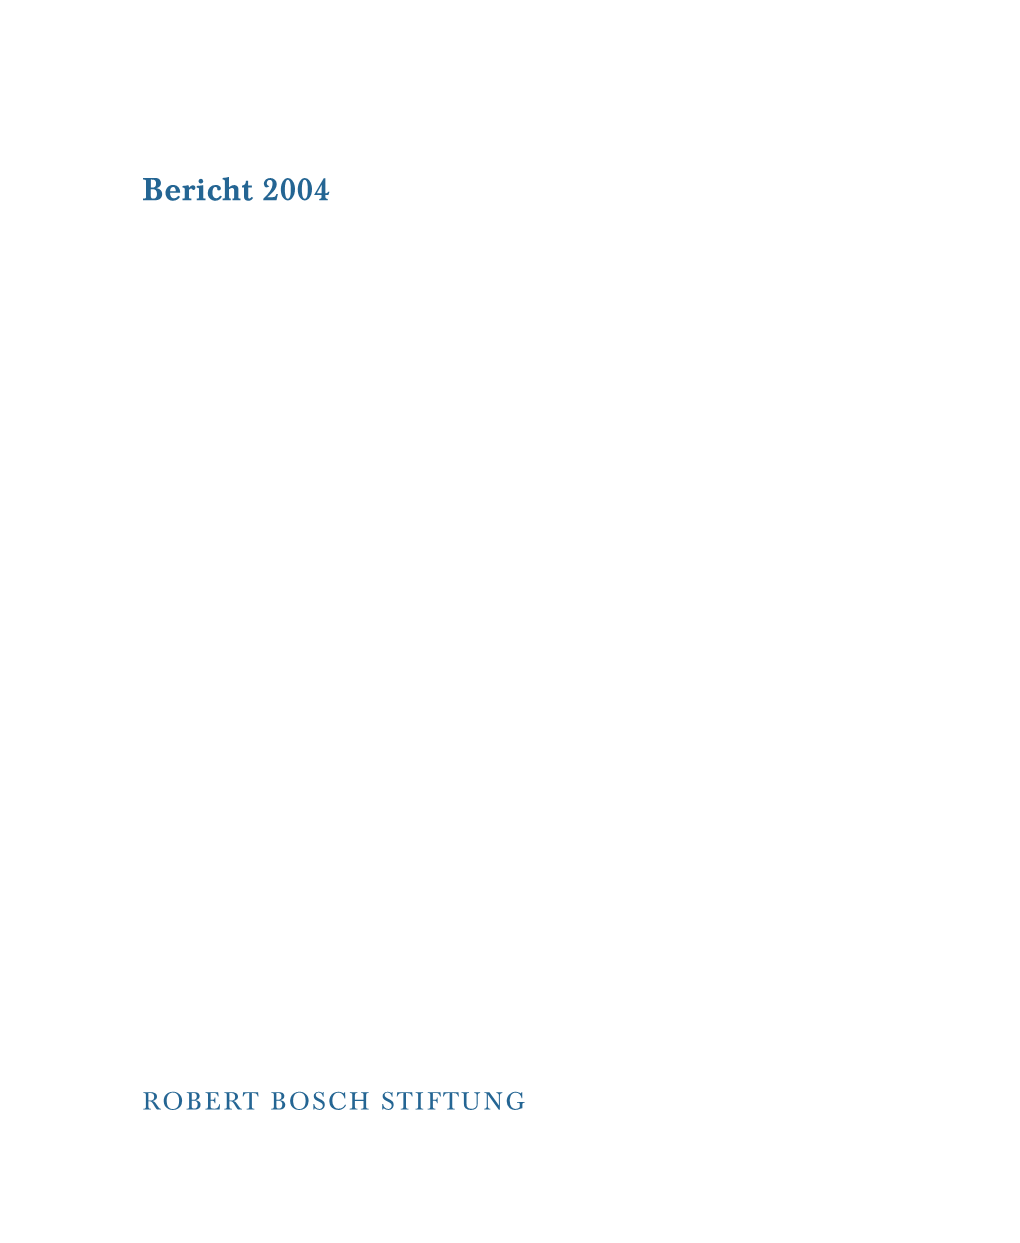 Tätigkeitsbericht Der Robert Bosch Stiftung 2004 (Pdf)